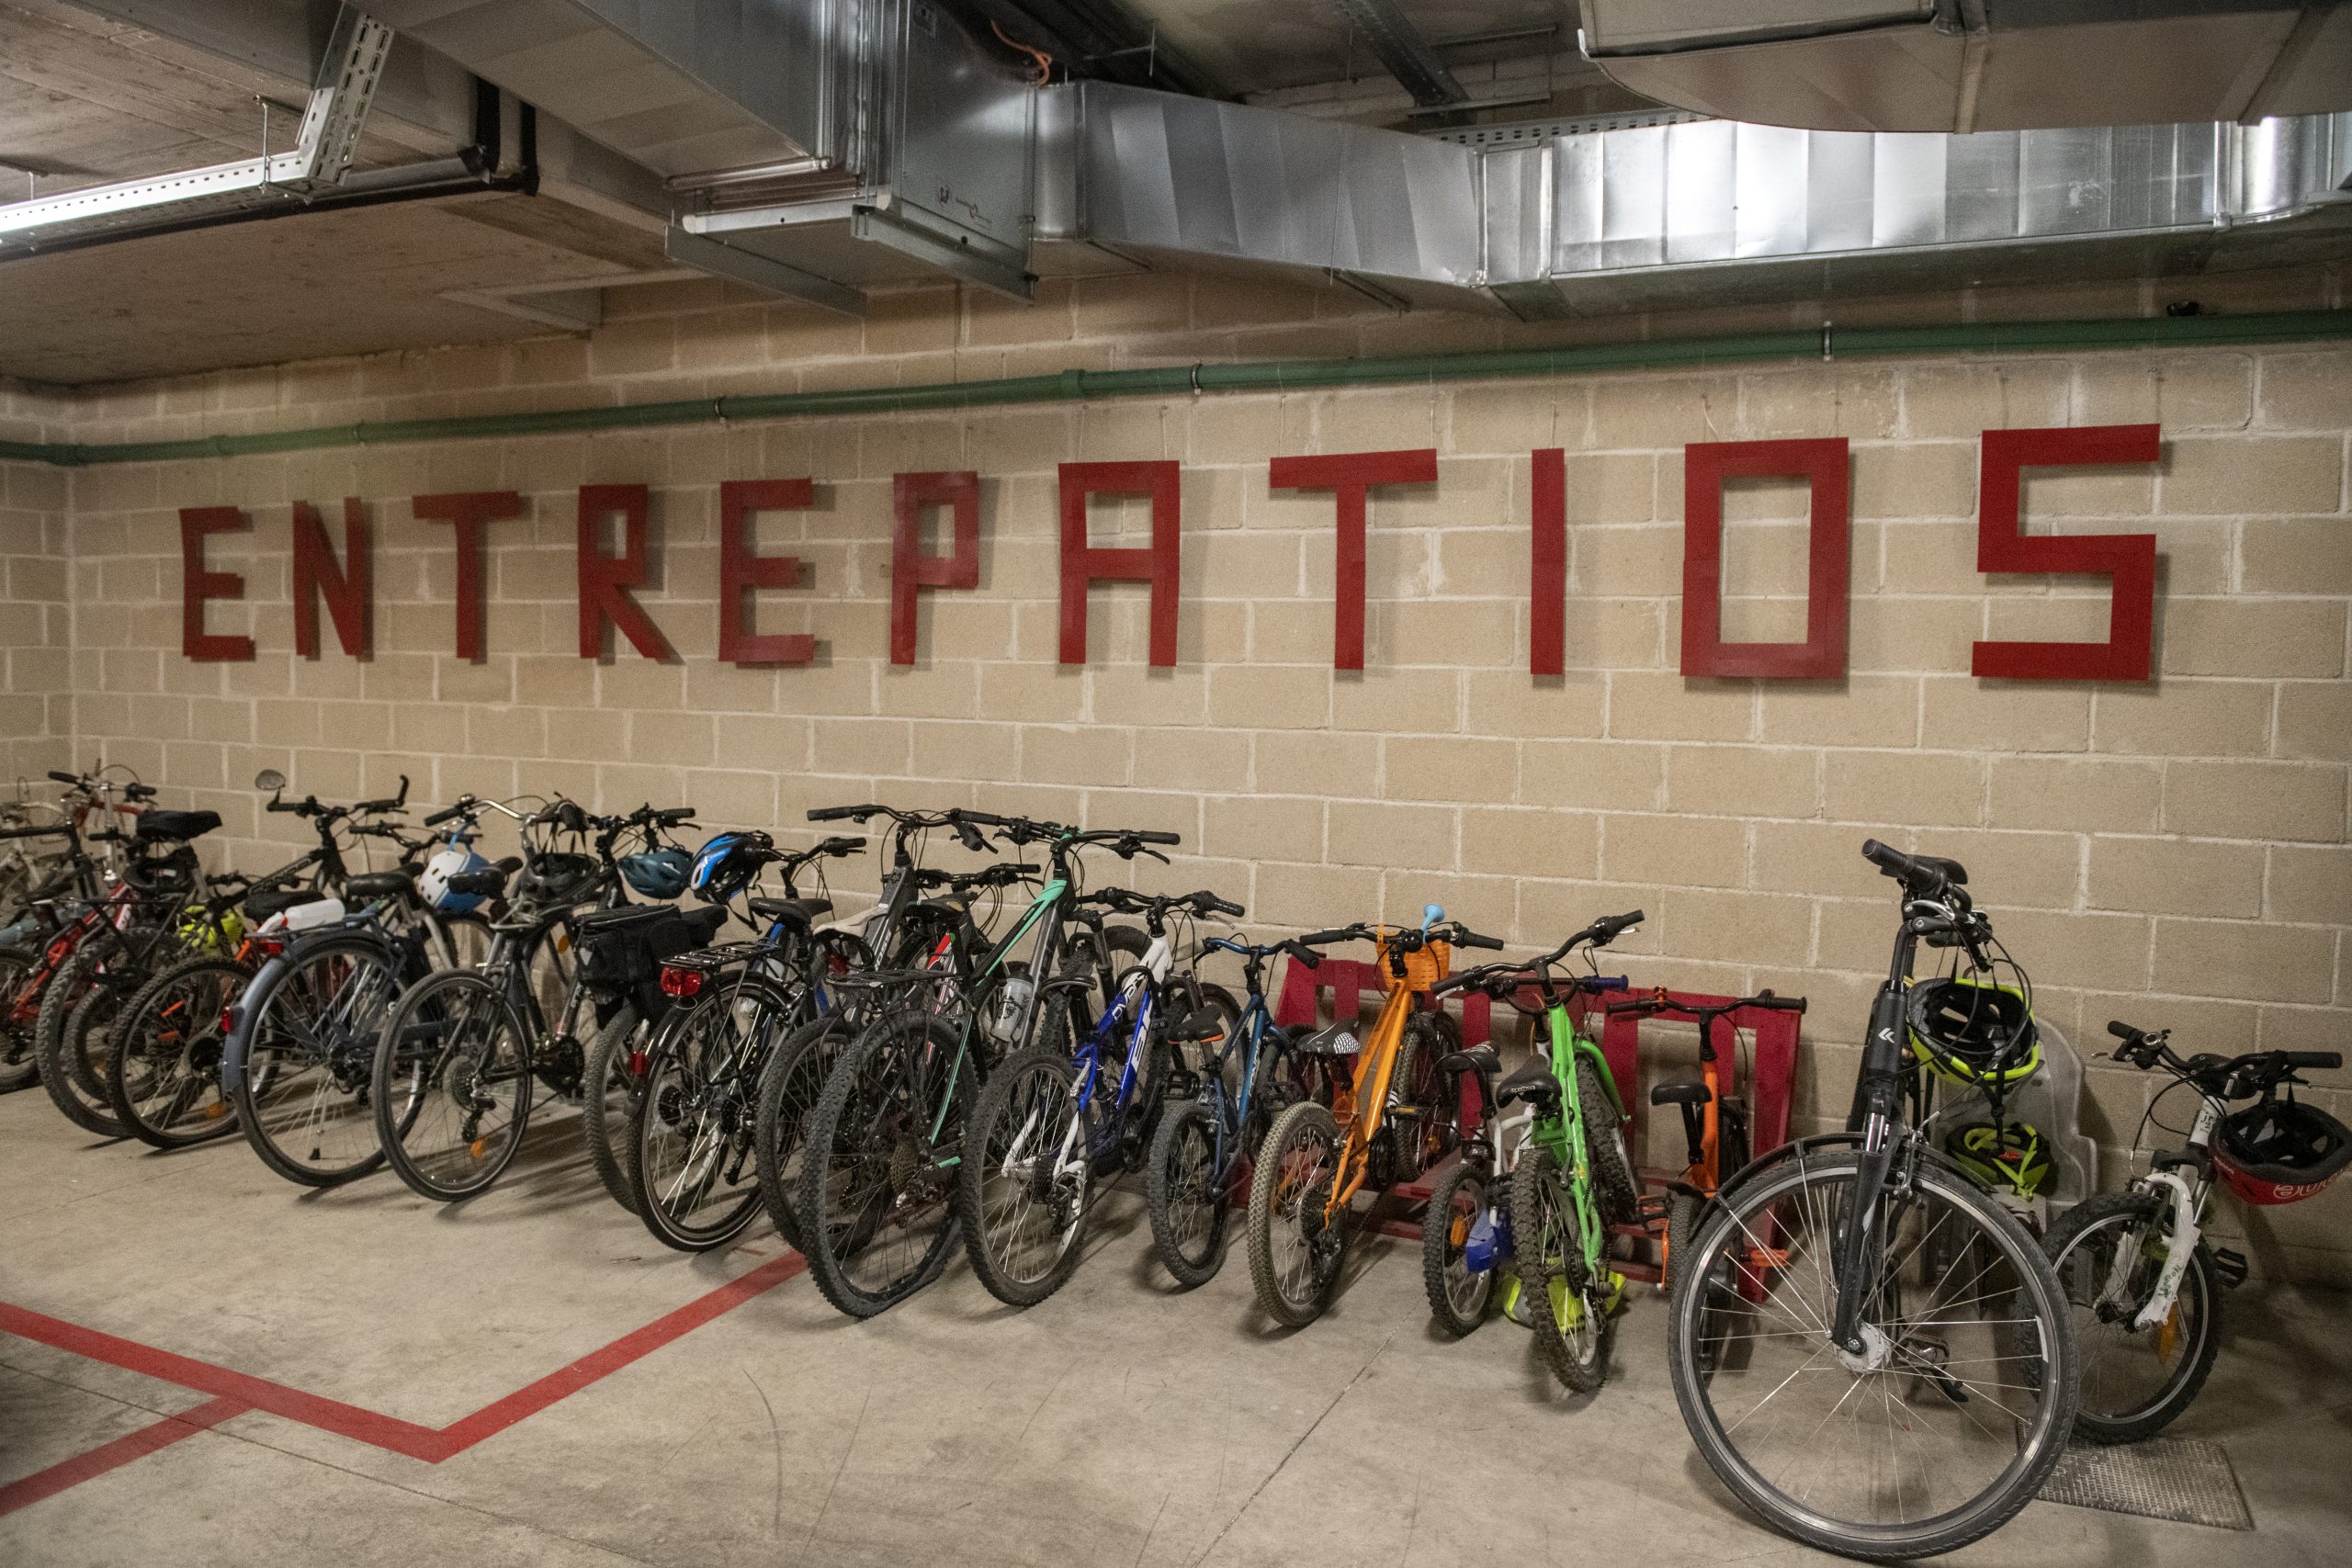 Bicycles in the Entrepatios garage. Credit: Álvaro Minguito